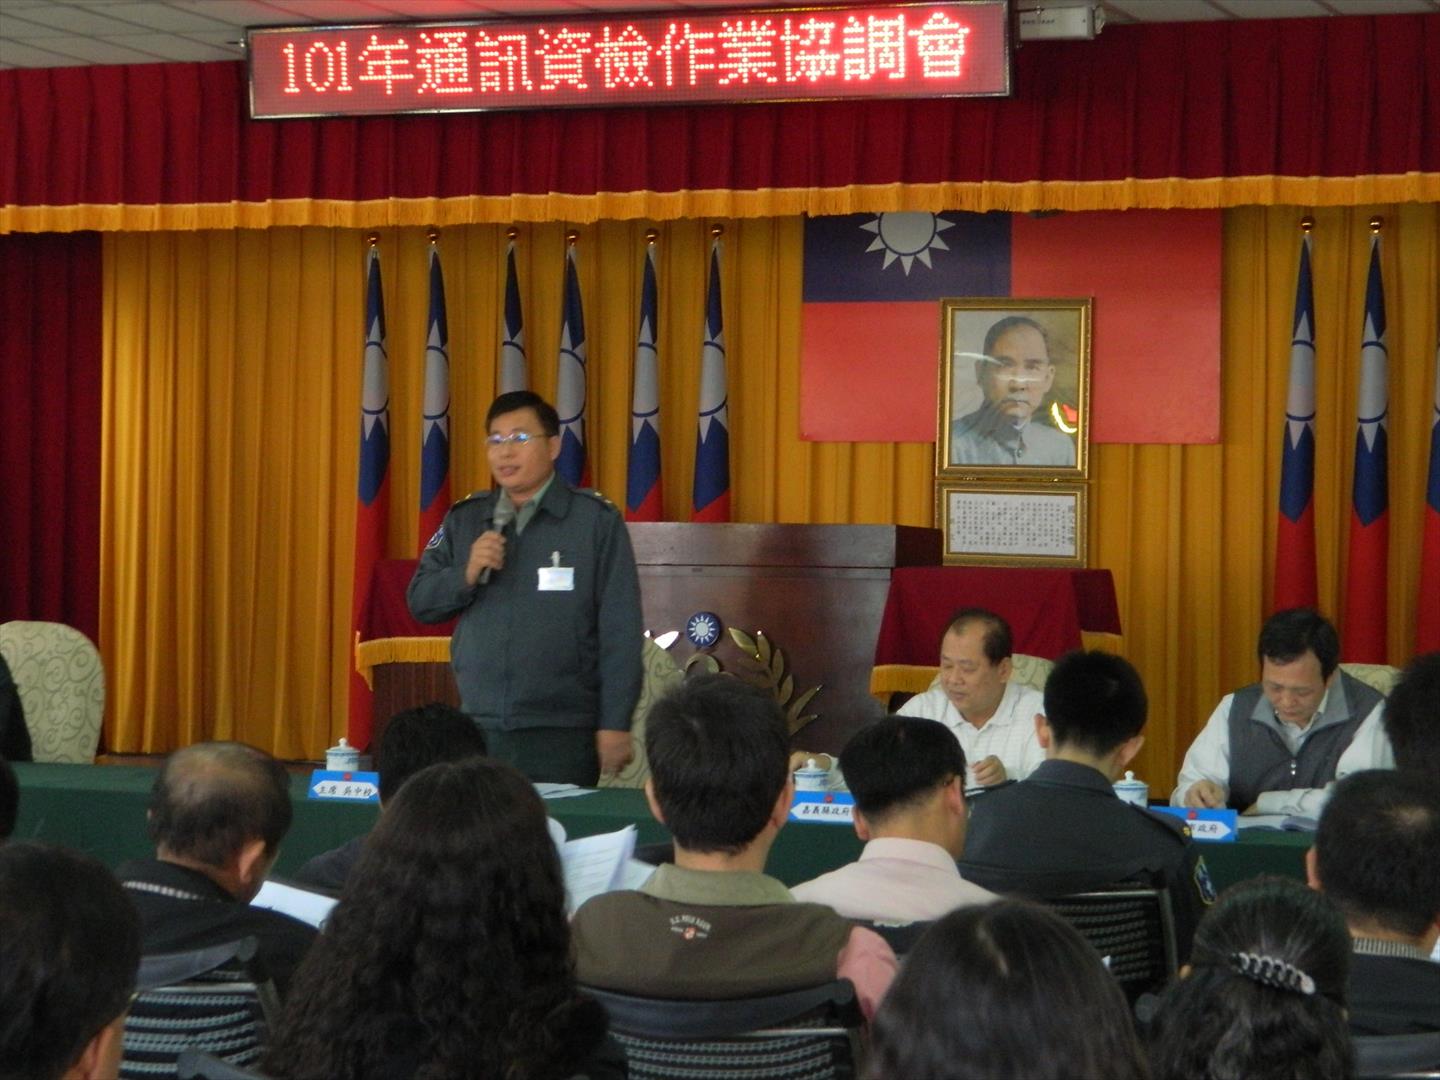 吳萬居先生（左） 擔任嘉義縣後備指揮部副指揮官主持會議照片。